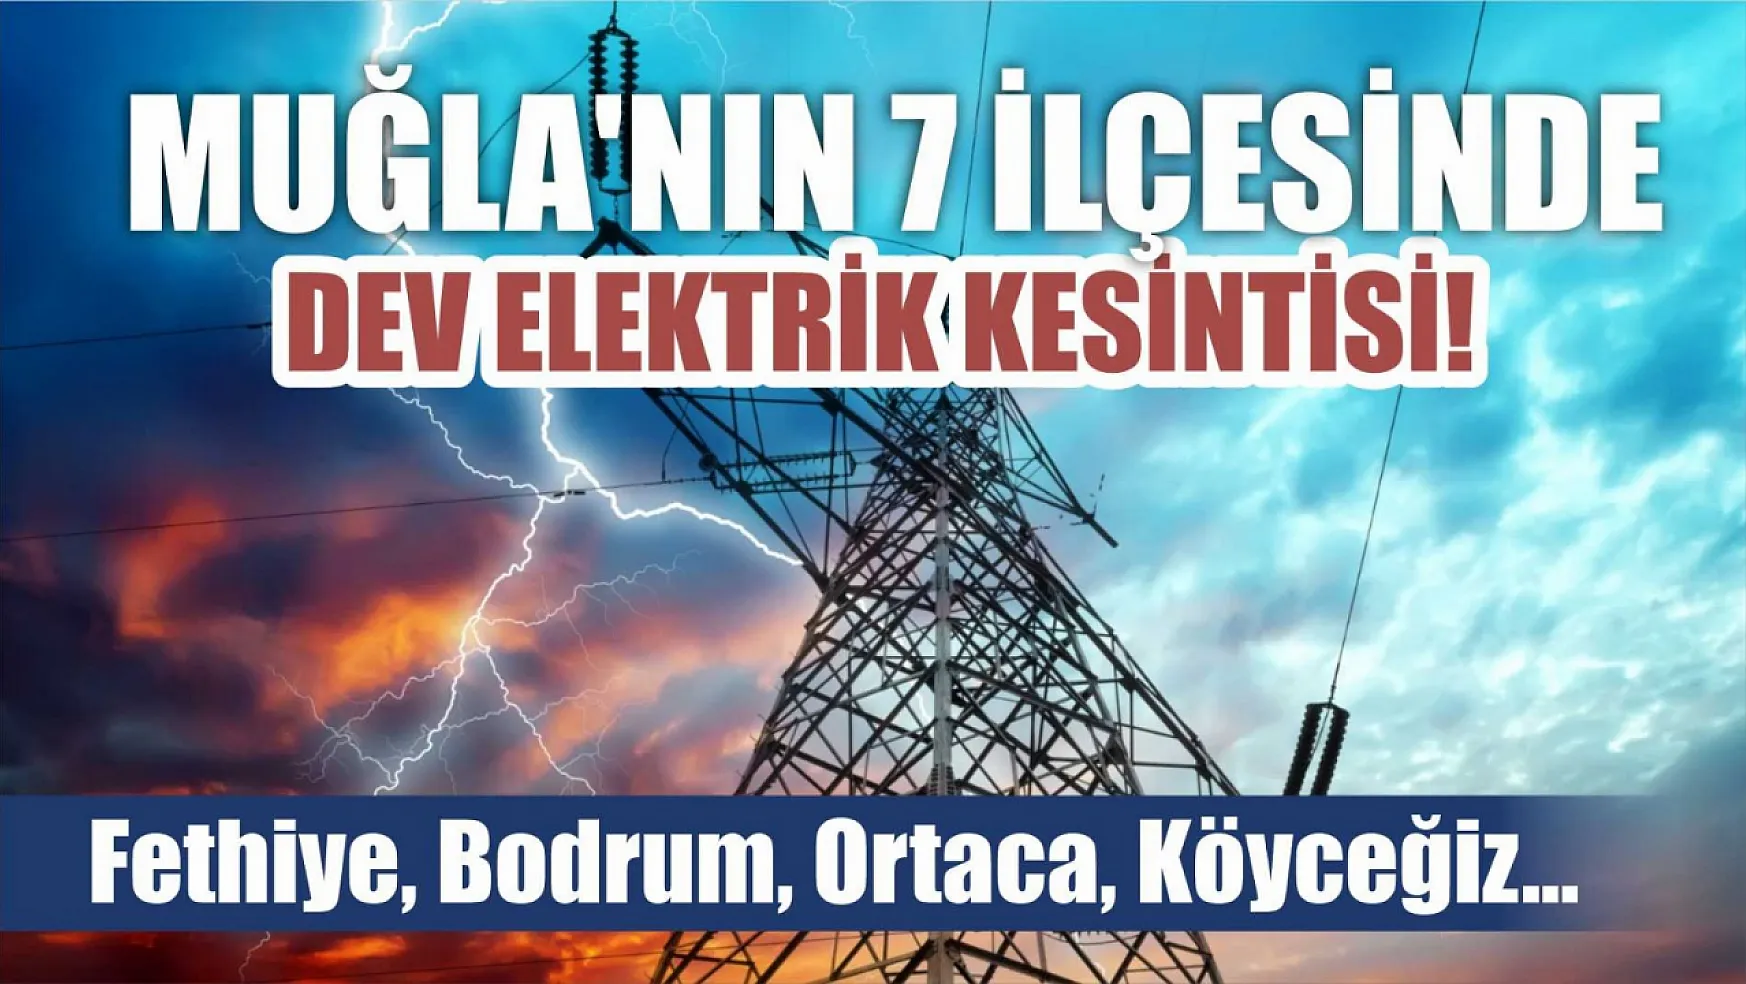 Muğla'nın 7 ilçesinde dev elektrik kesintisi yaşanacak! Fethiye, Bodrum, Ortaca, Köyceğiz..